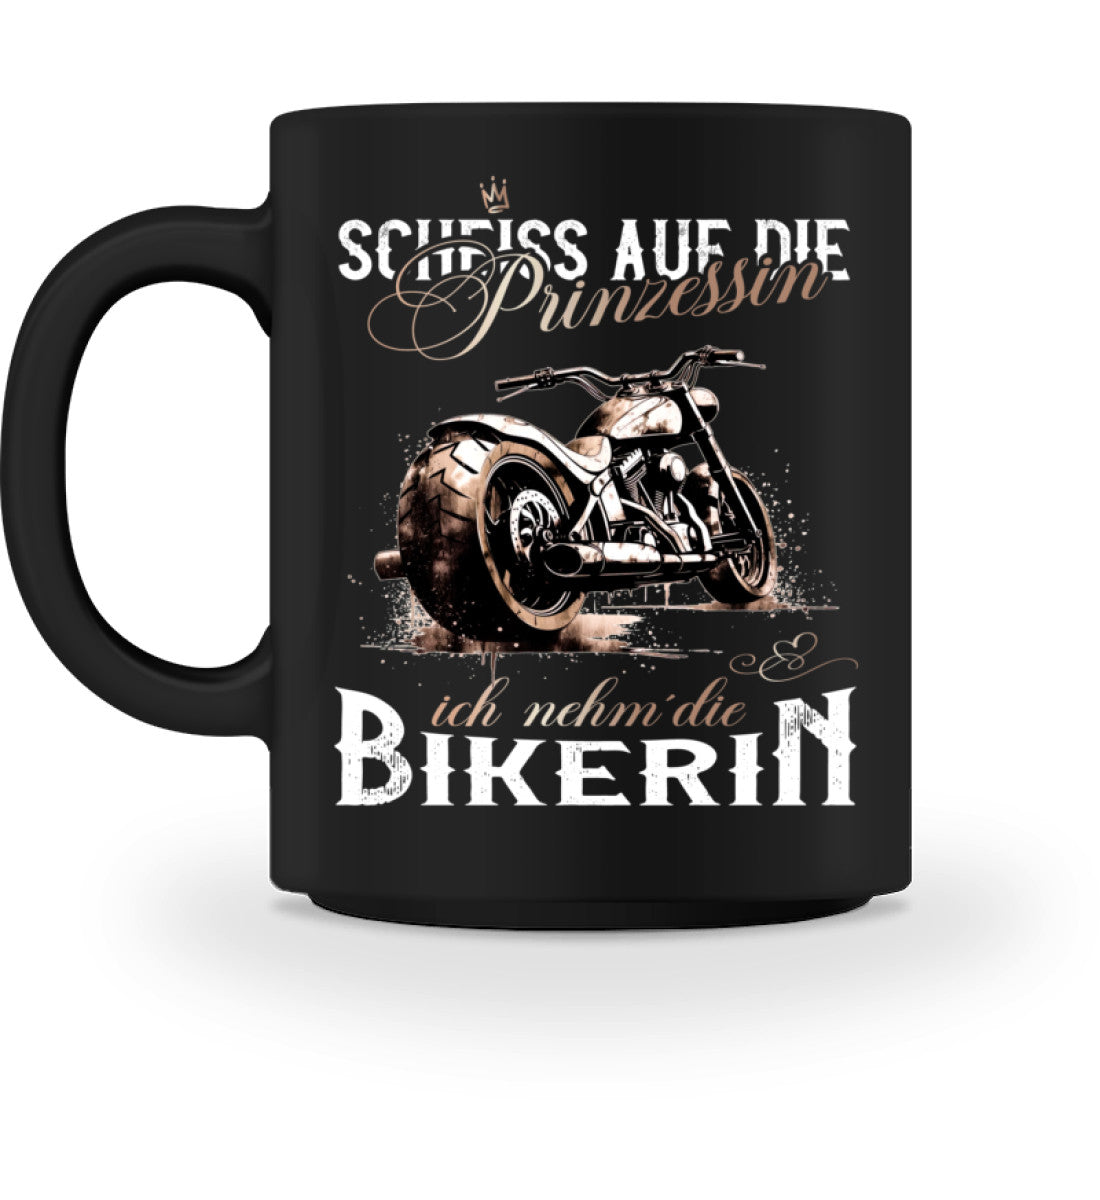 Eine Biker Tasse für Motorradfahrer, von Wingbikers, mit dem beidseitigen Aufdruck, Scheiß auf die Prinzessin, ich nehm´ die Bikerin, in schwarz.